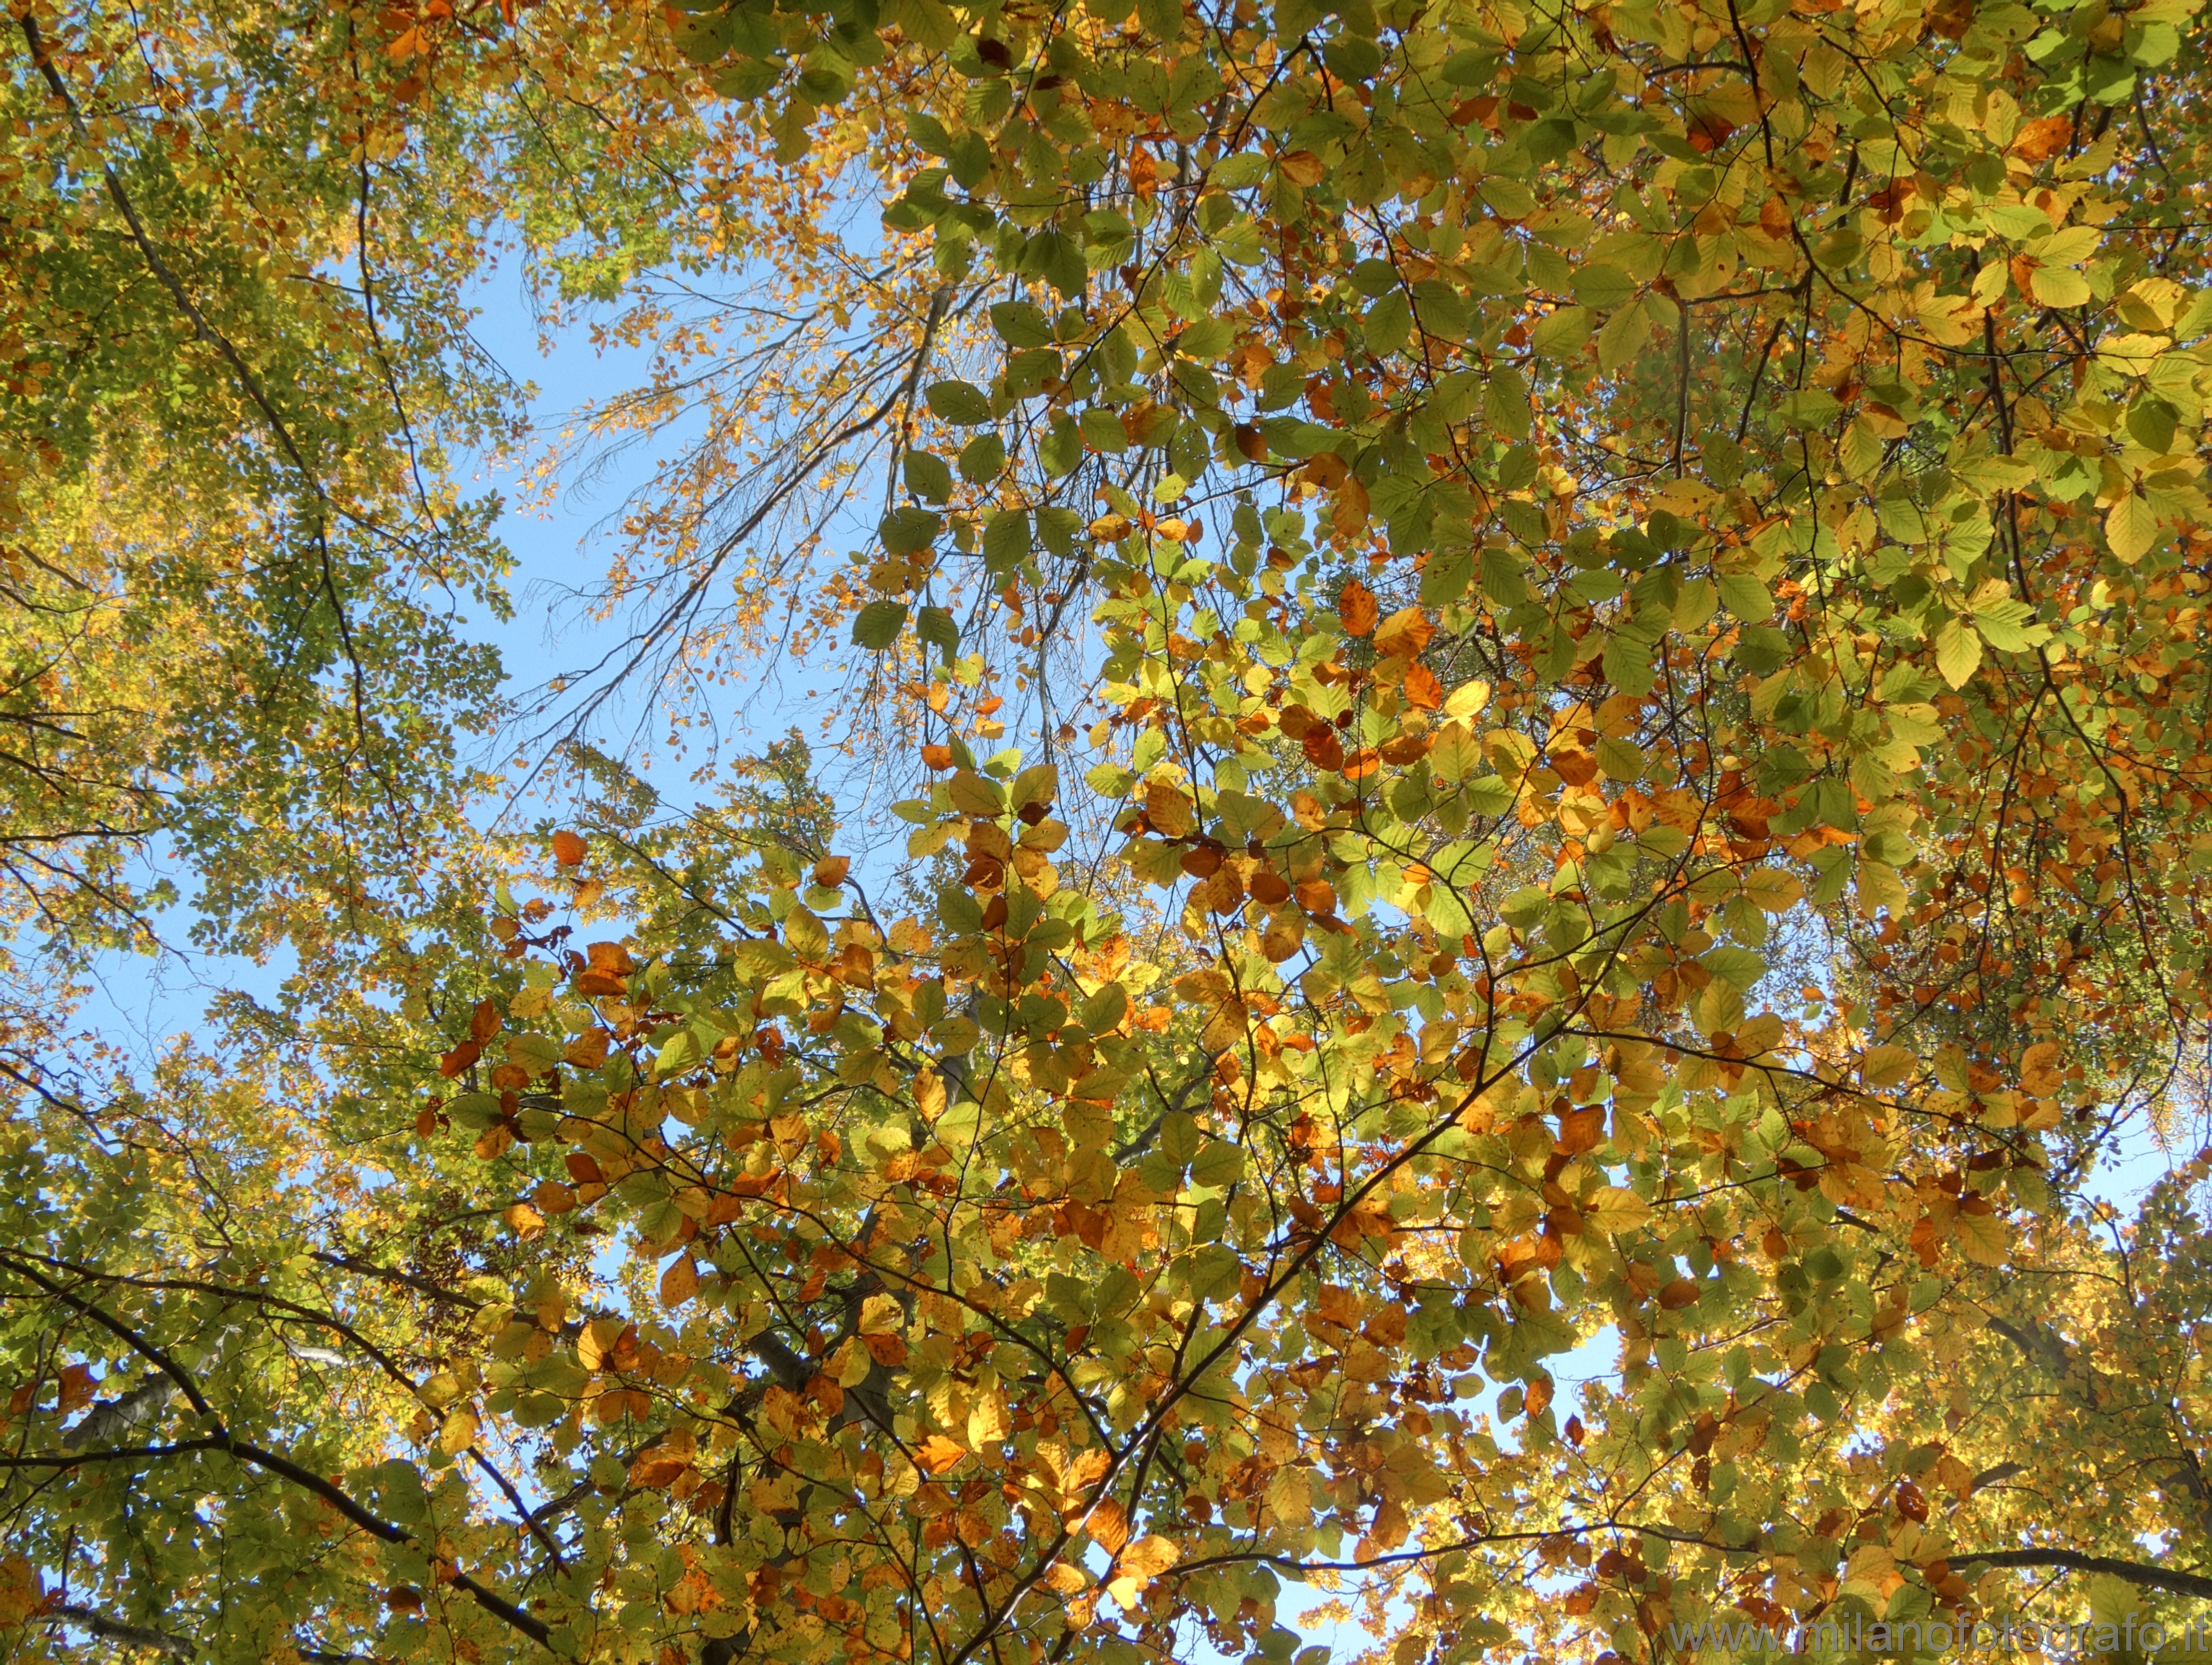 Piaro (Biella, Italy): Autumn branches against the blue sky - Piaro (Biella, Italy)